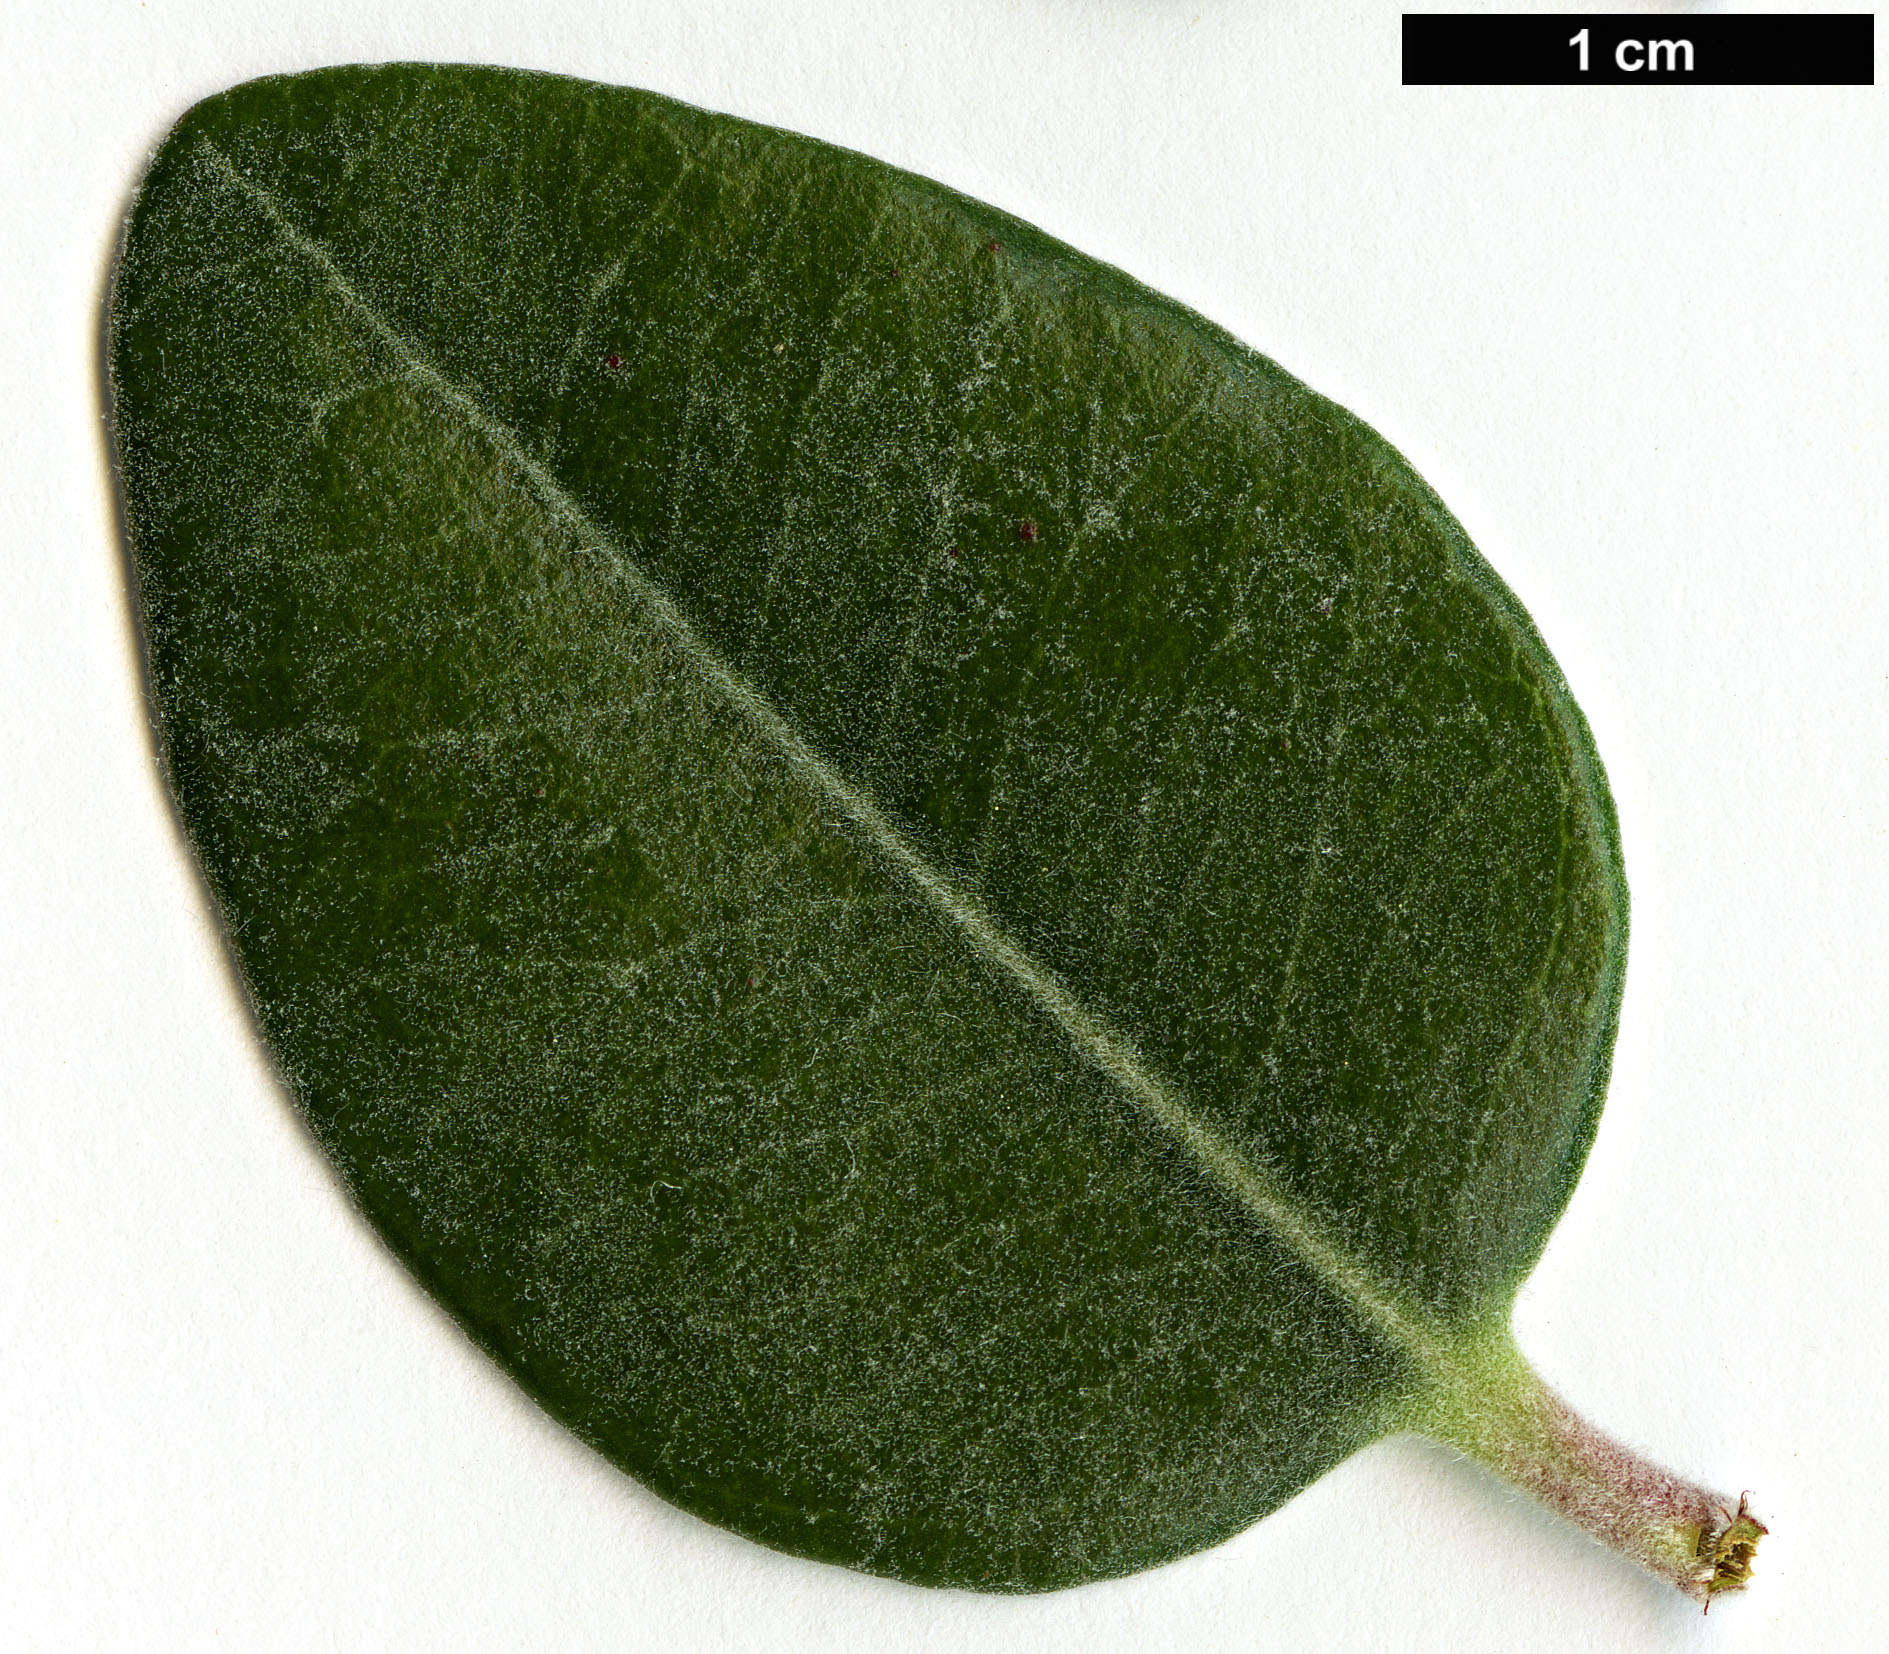 High resolution image: Family: Myrtaceae - Genus: Metrosideros - Taxon: kermadecensis